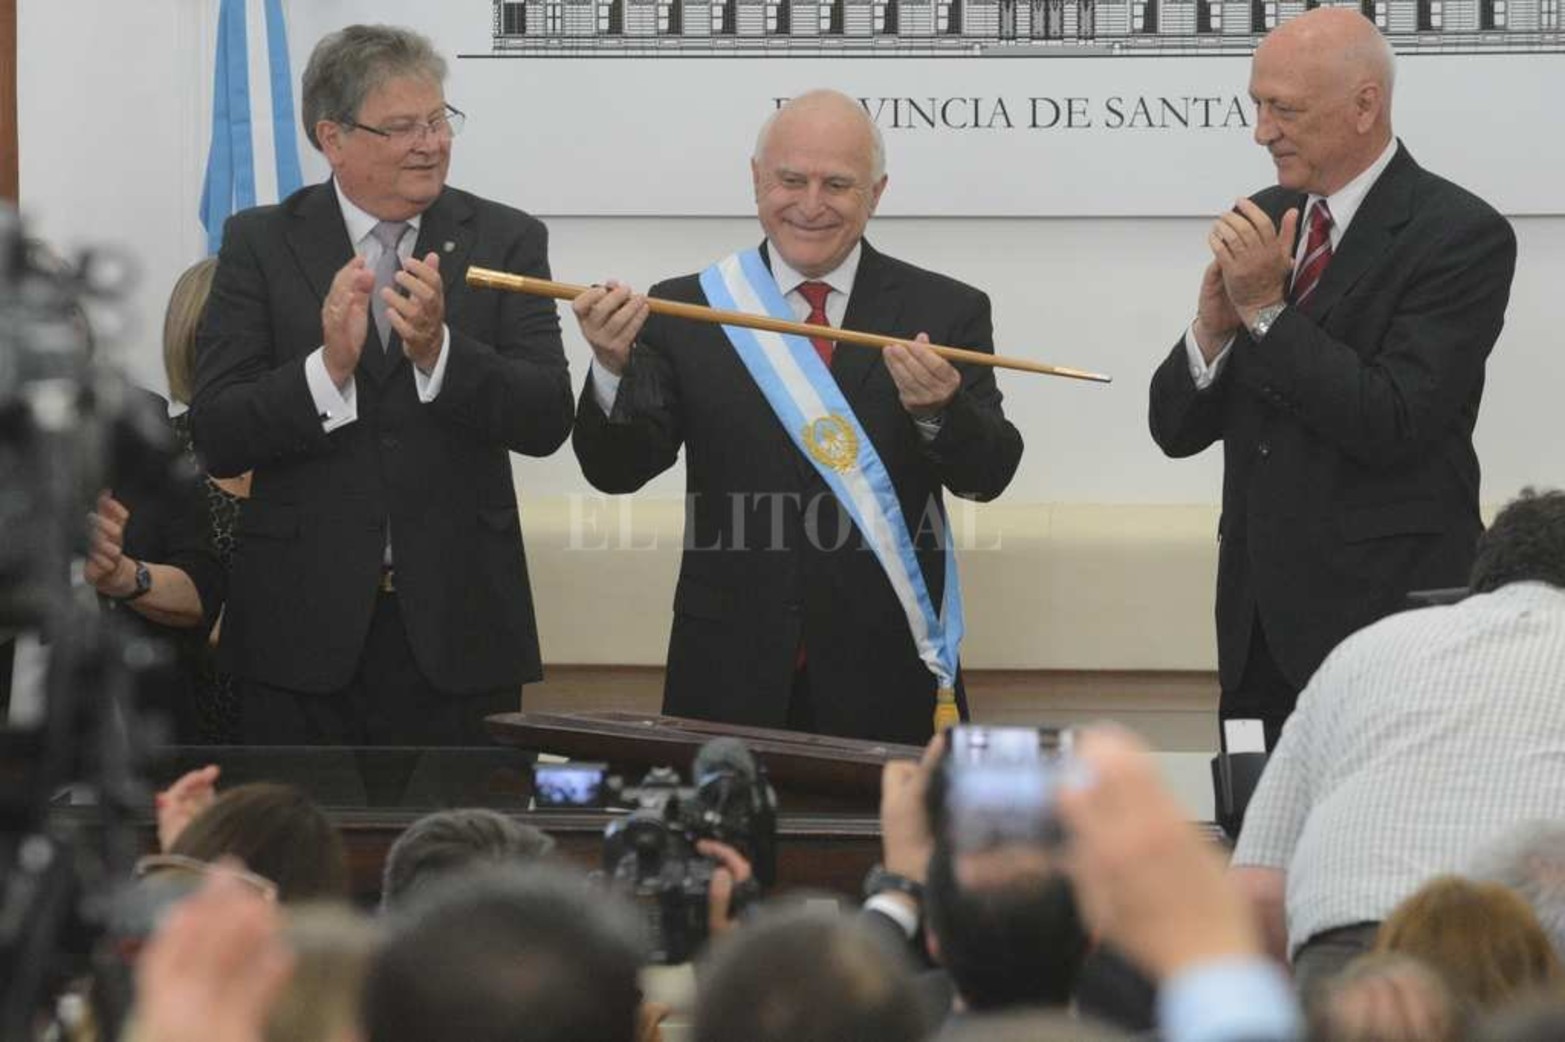 El 11 de diciembre de 2015 Miguel Lifschitz recibe en el Salón Blanco de la Casa de Gobierno la bastón y la banda de manos de su antecesor, Antonio Bonfatti.